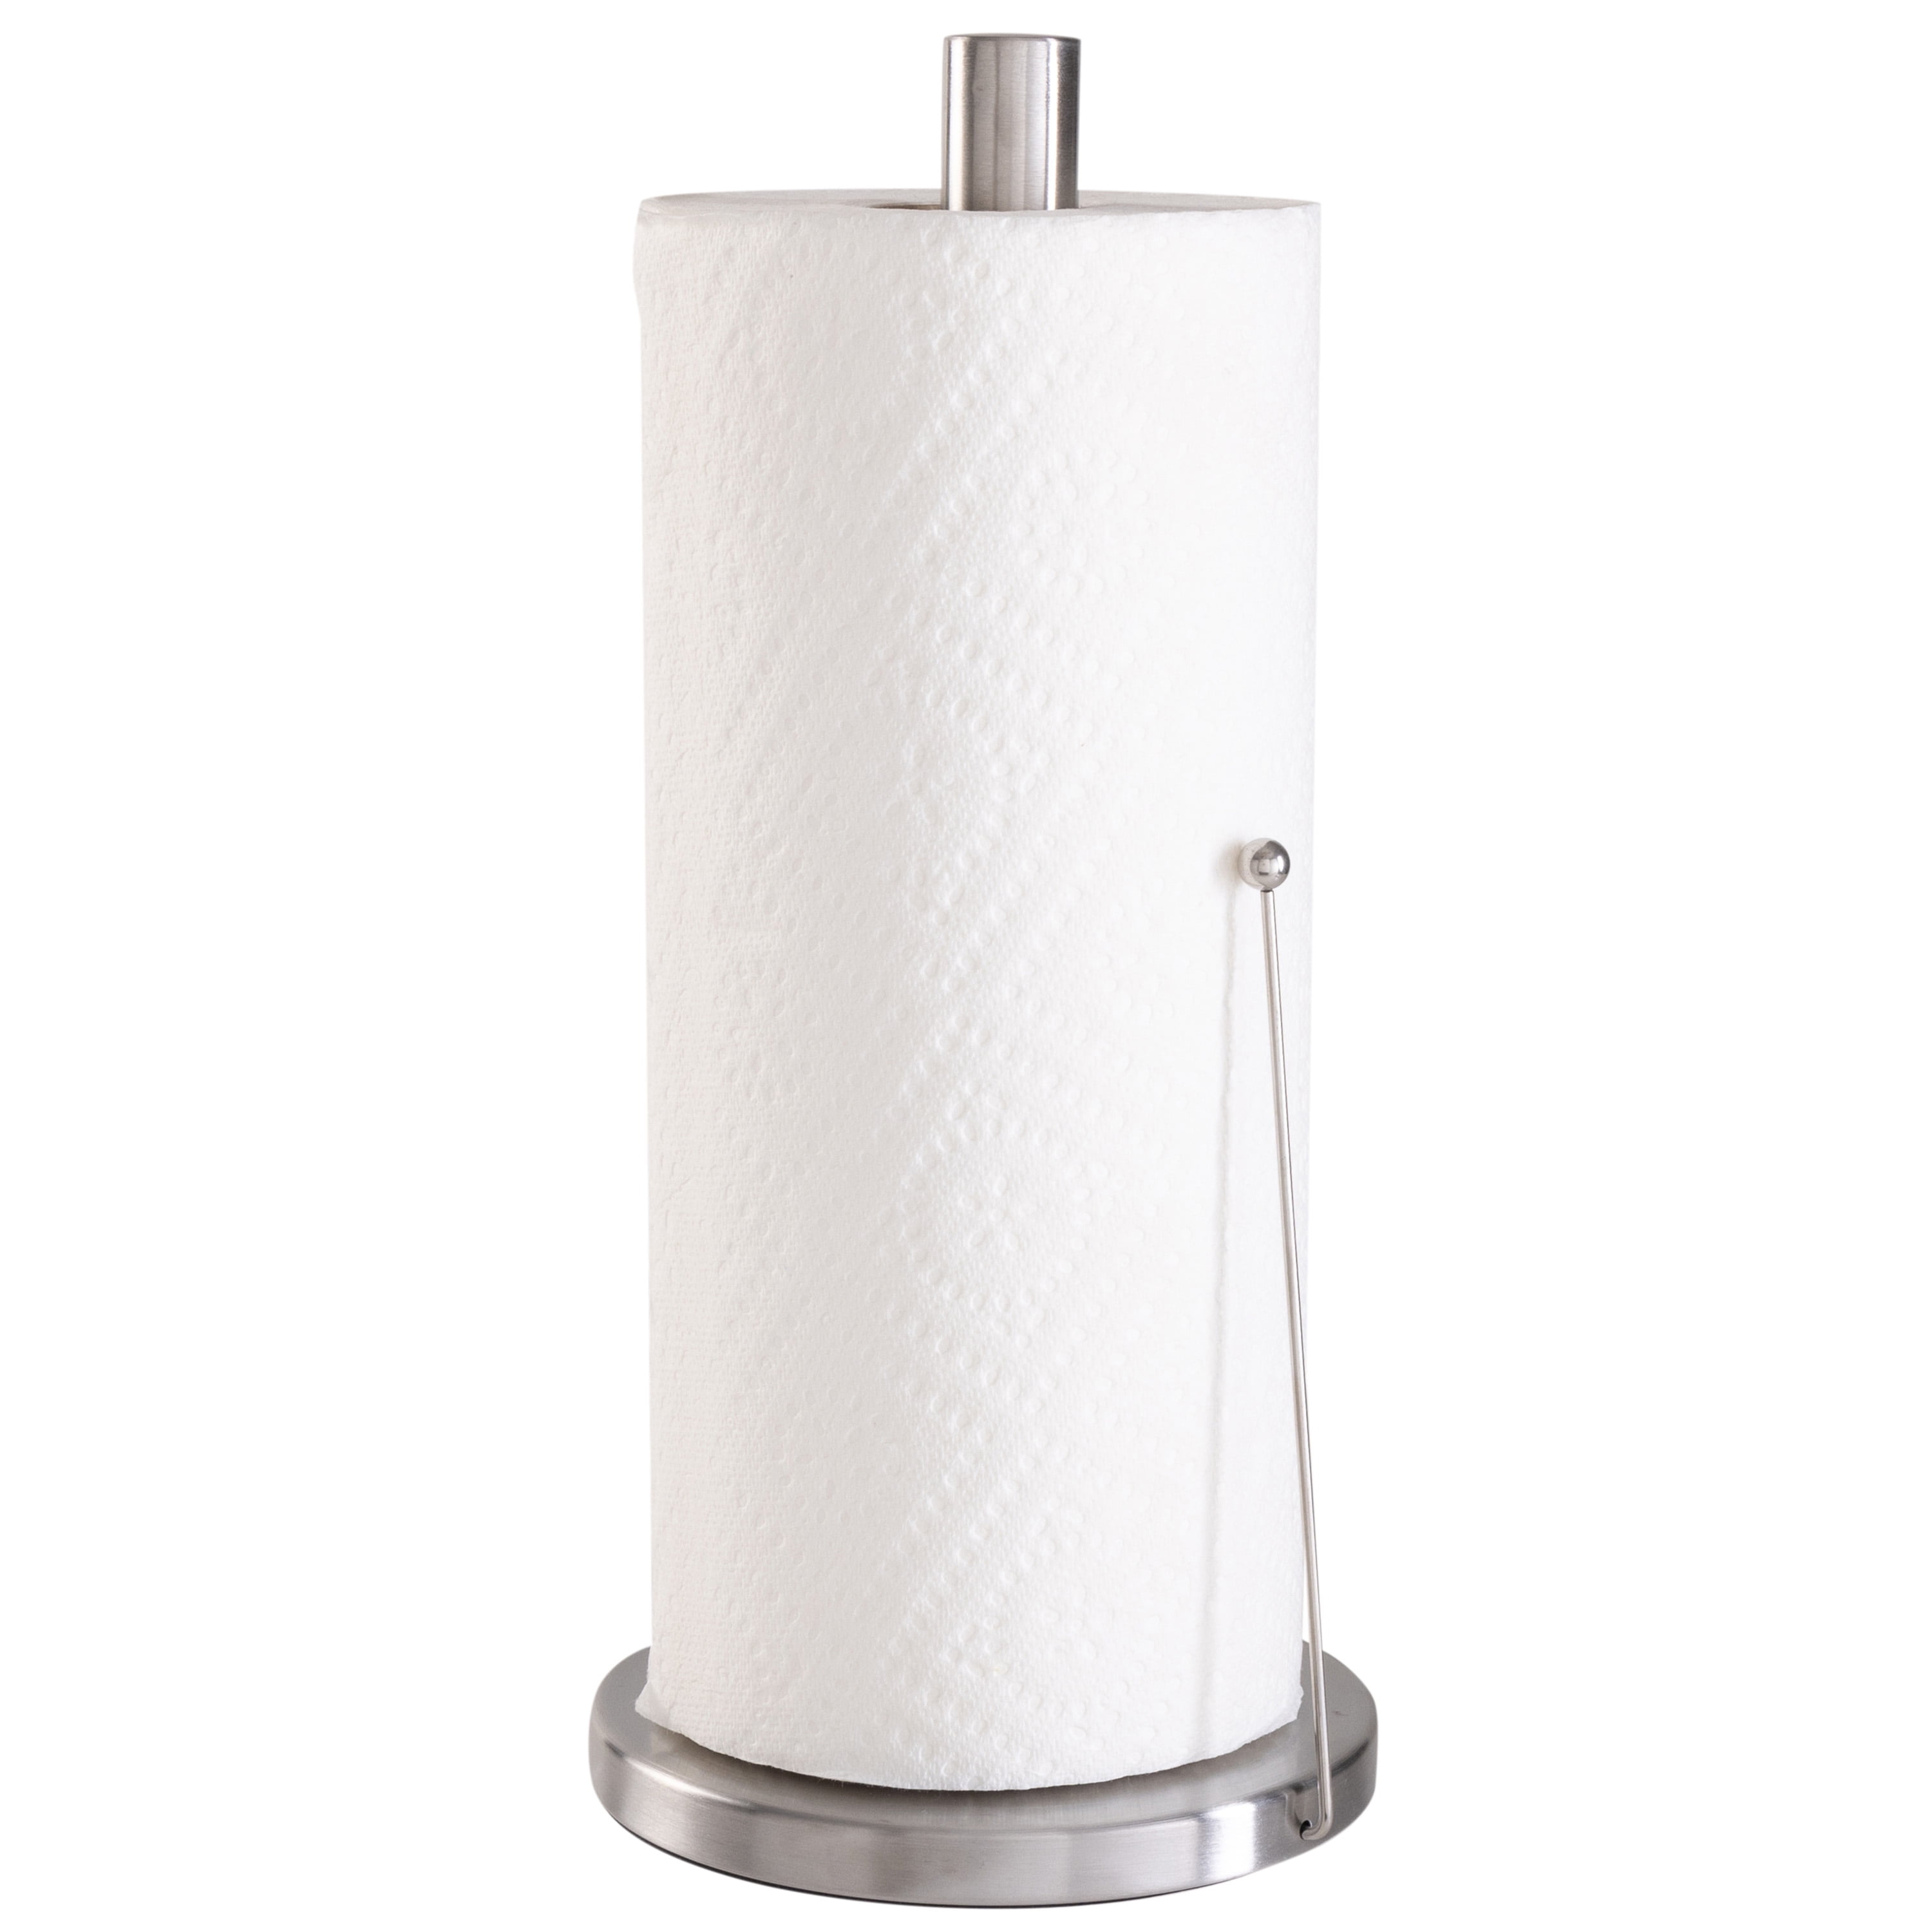 ASTOFLI Self Adhesive Paper Towel Holder Wall Mount, Rustproof 304  Stainless Steel Under Cabinet Paper Towel Rack Under Cabinet-12 IN. (BLACK)  